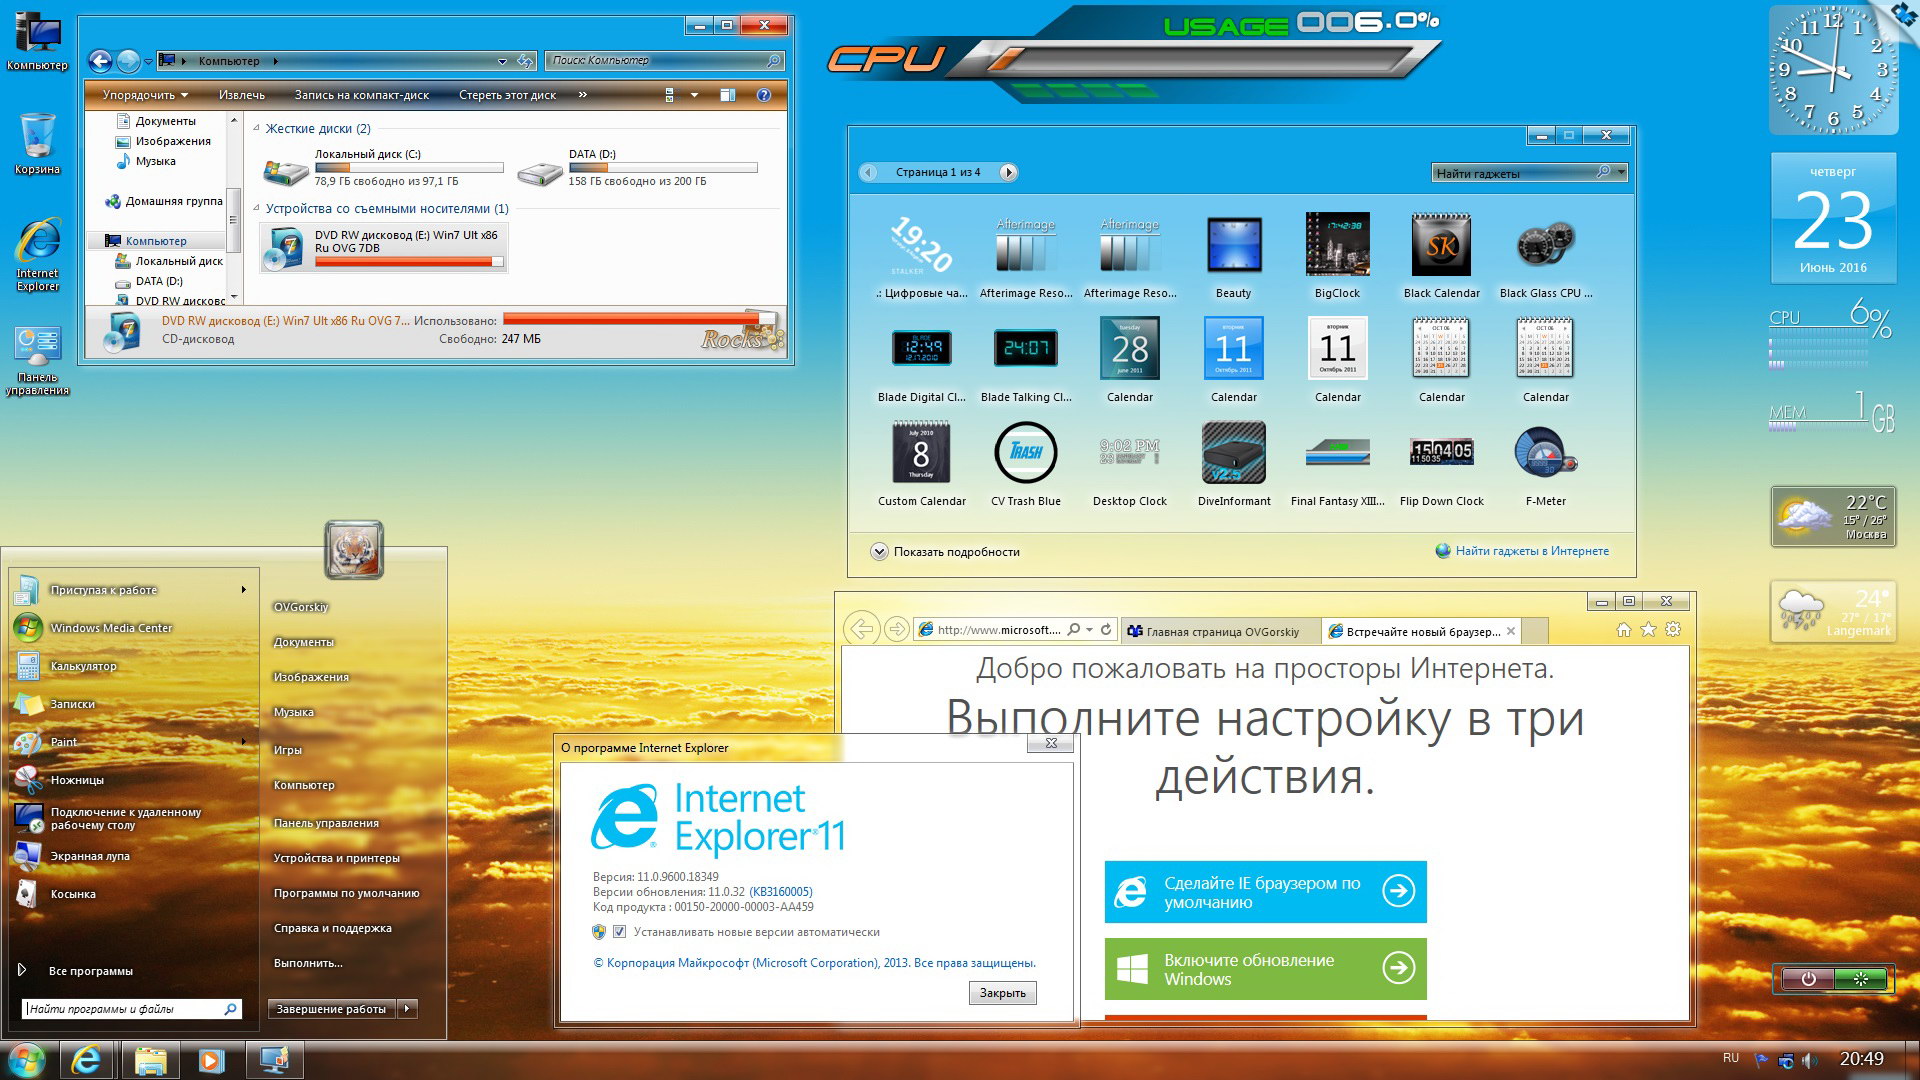 Телеграмм скачать бесплатно для компьютера для виндовс 7 на русском языке фото 61